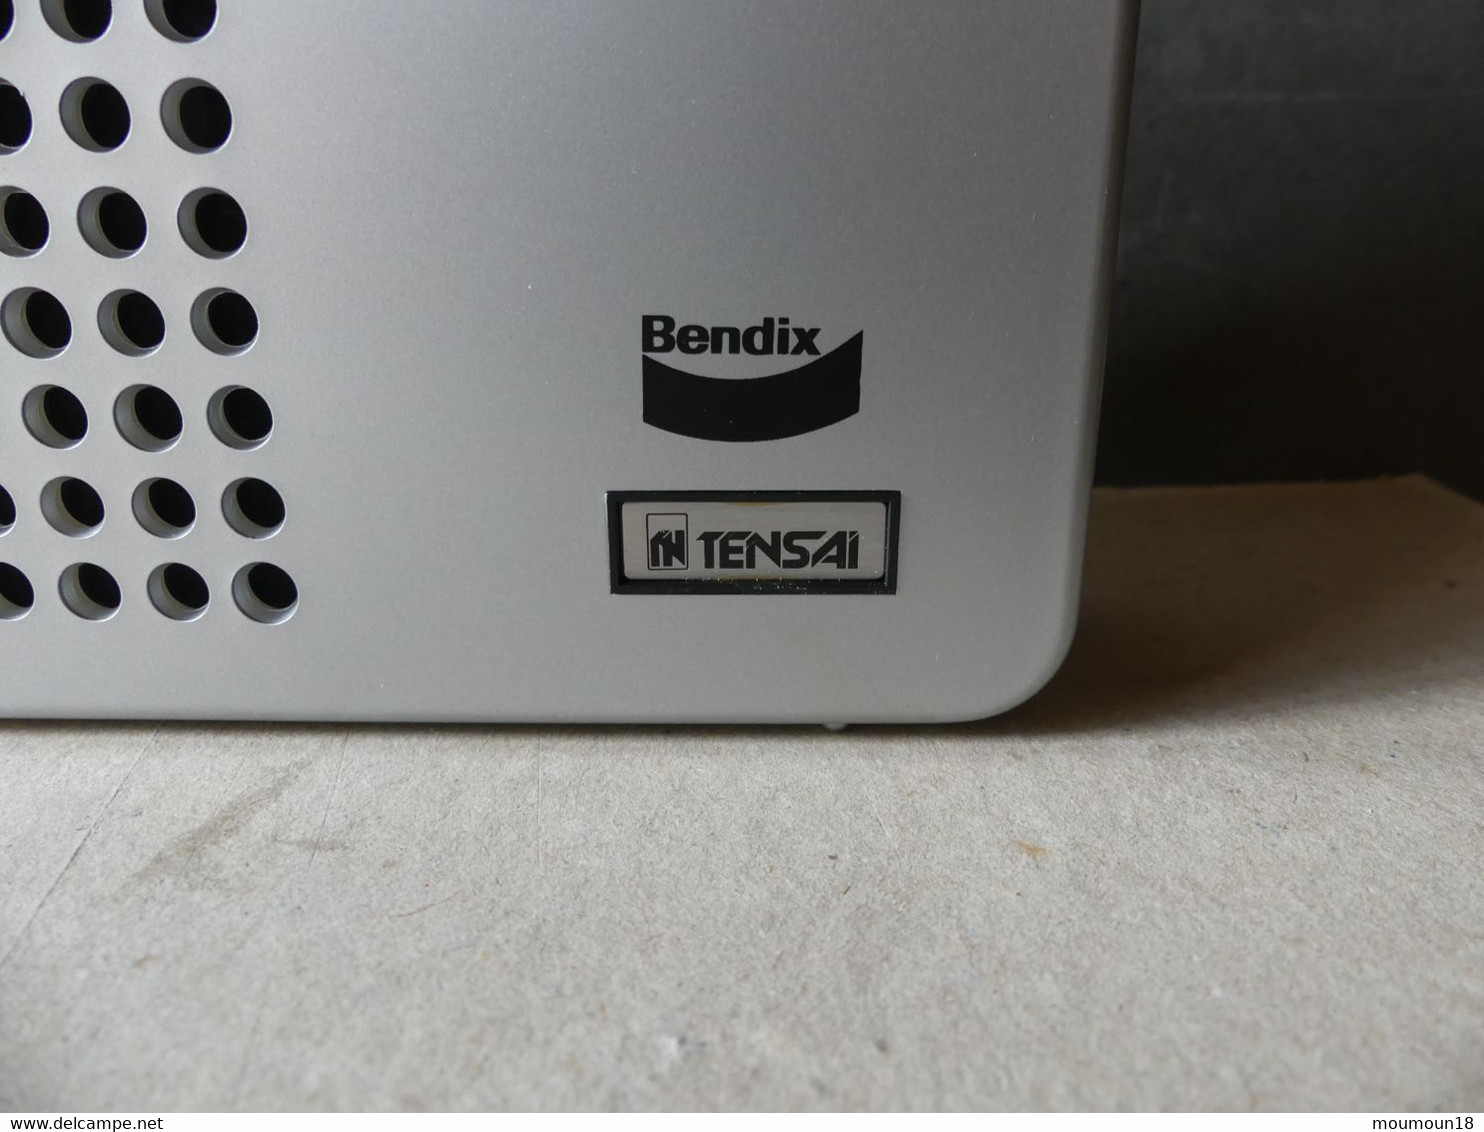 Radio Portable à La Main Vintage Bendix Tensai TRP-4201 - Apparaten